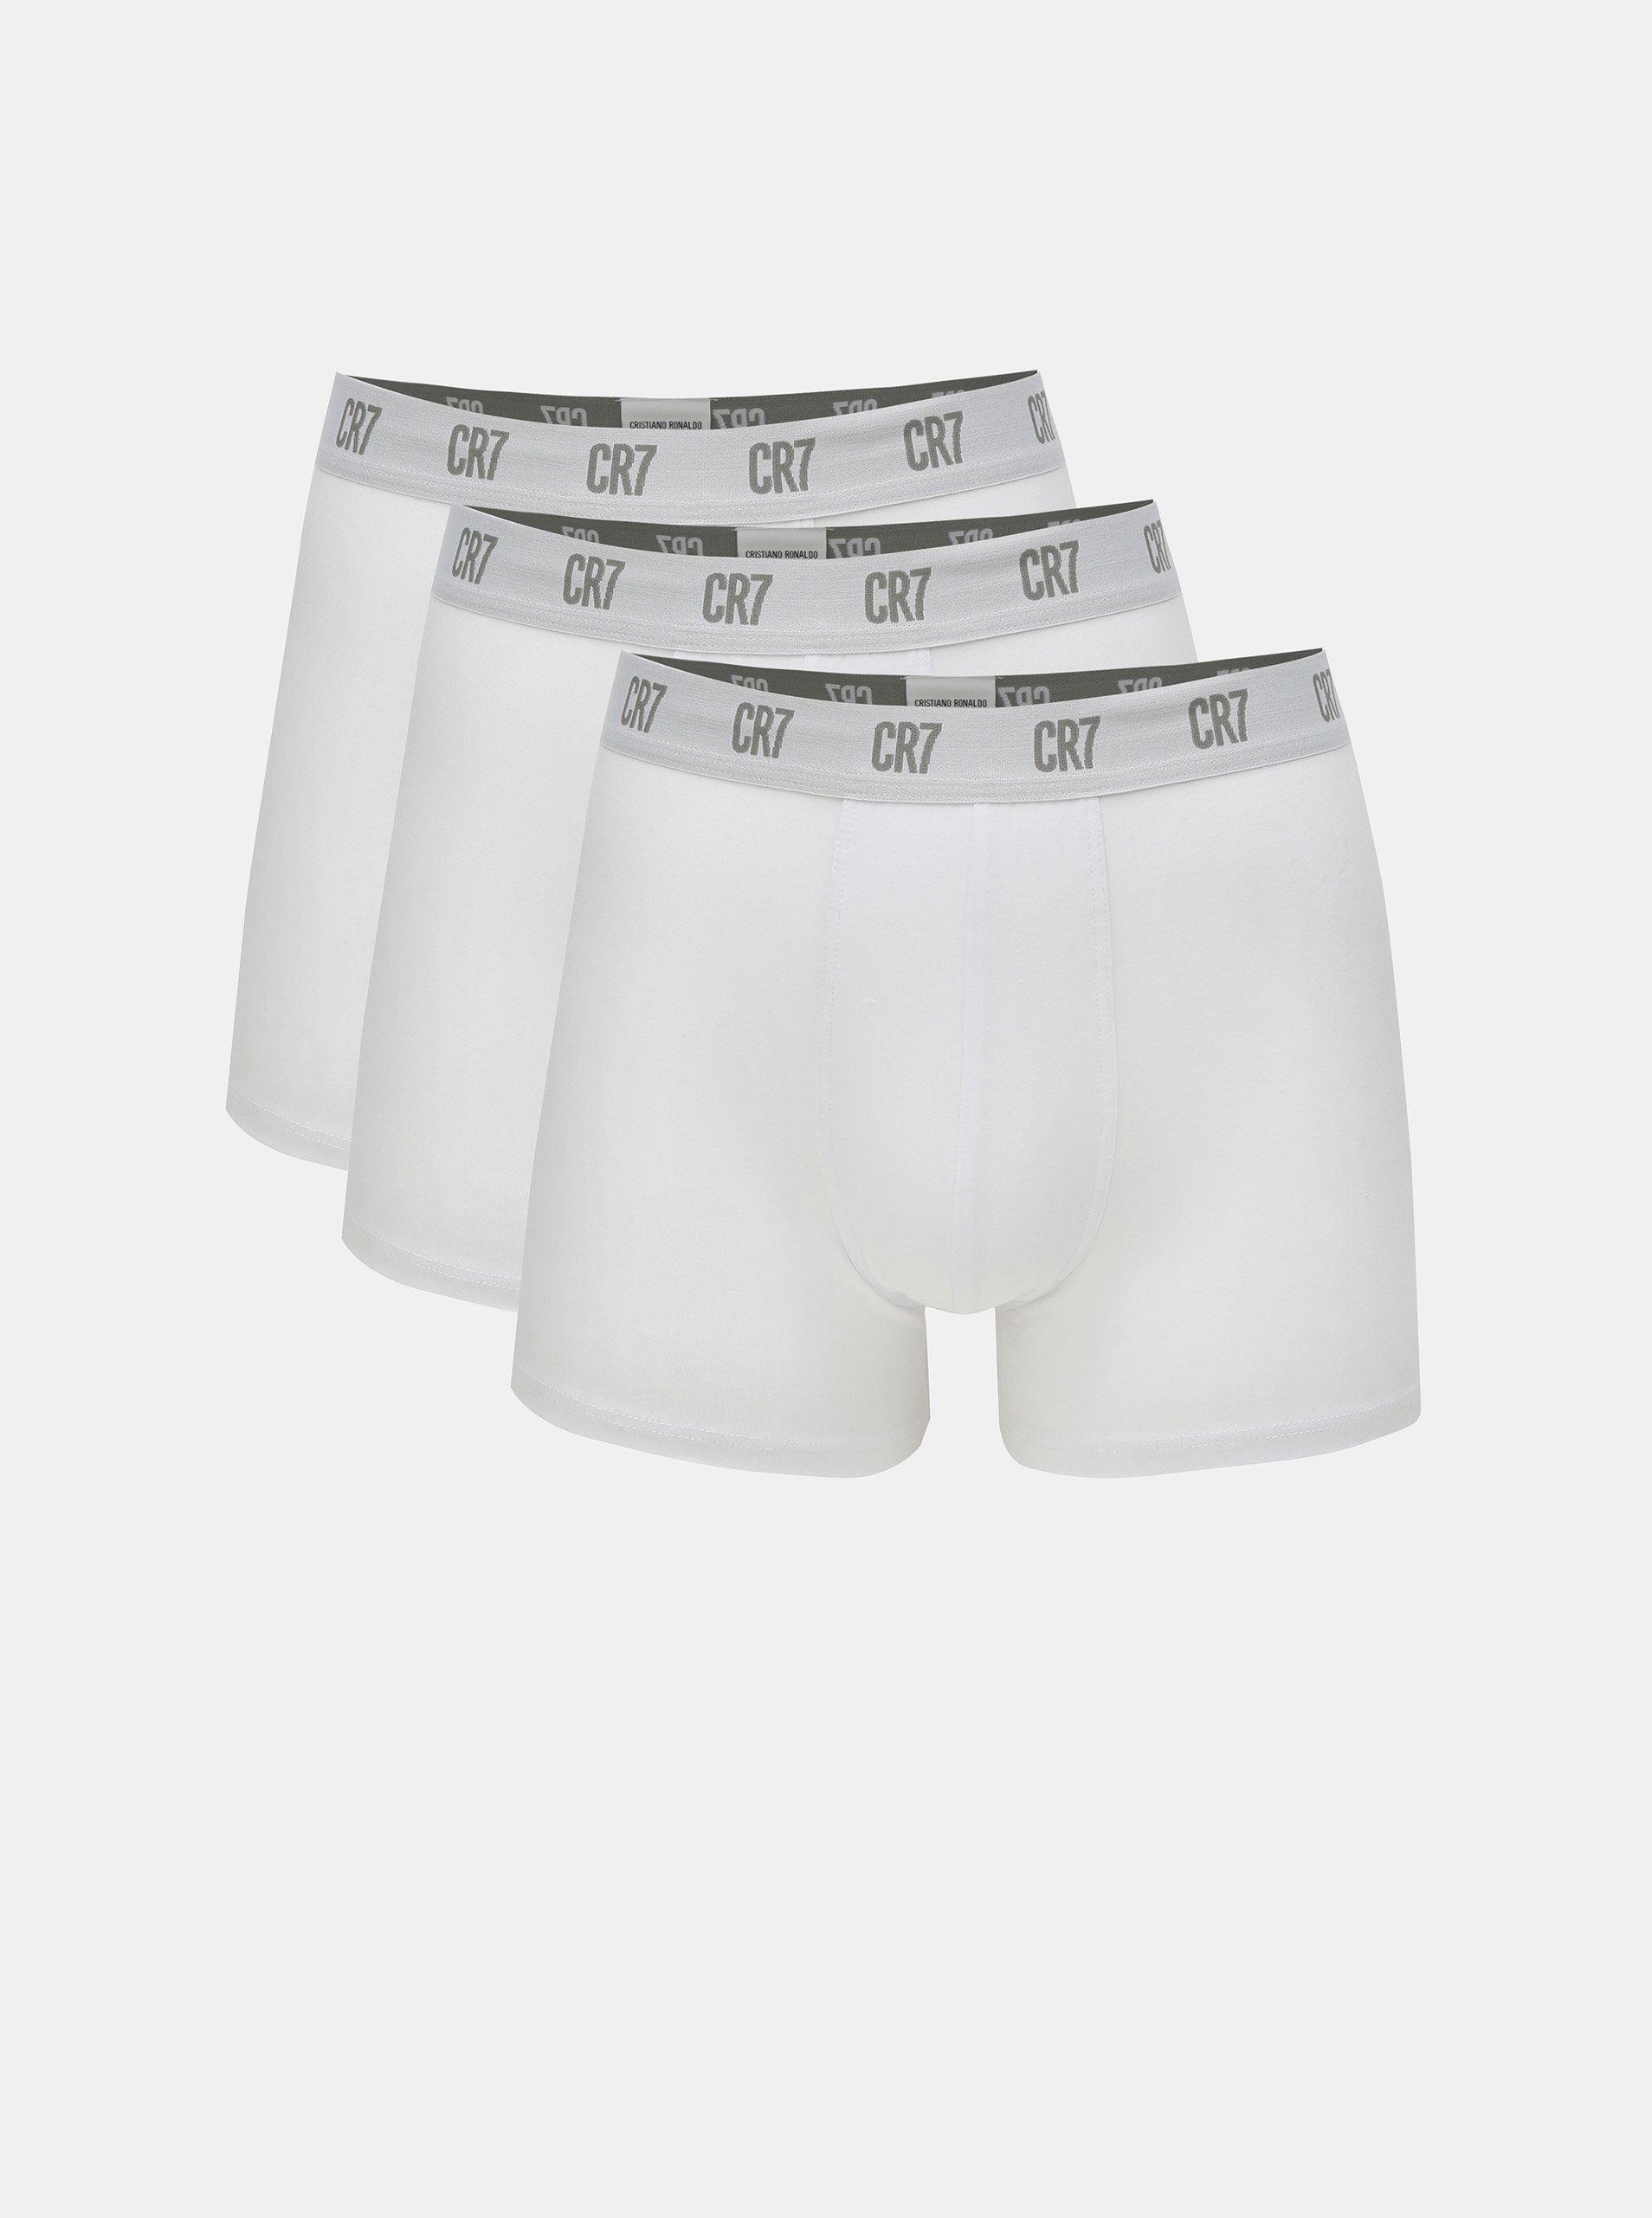 Lacno Súprava troch boxeriek v bielej farbe CR7